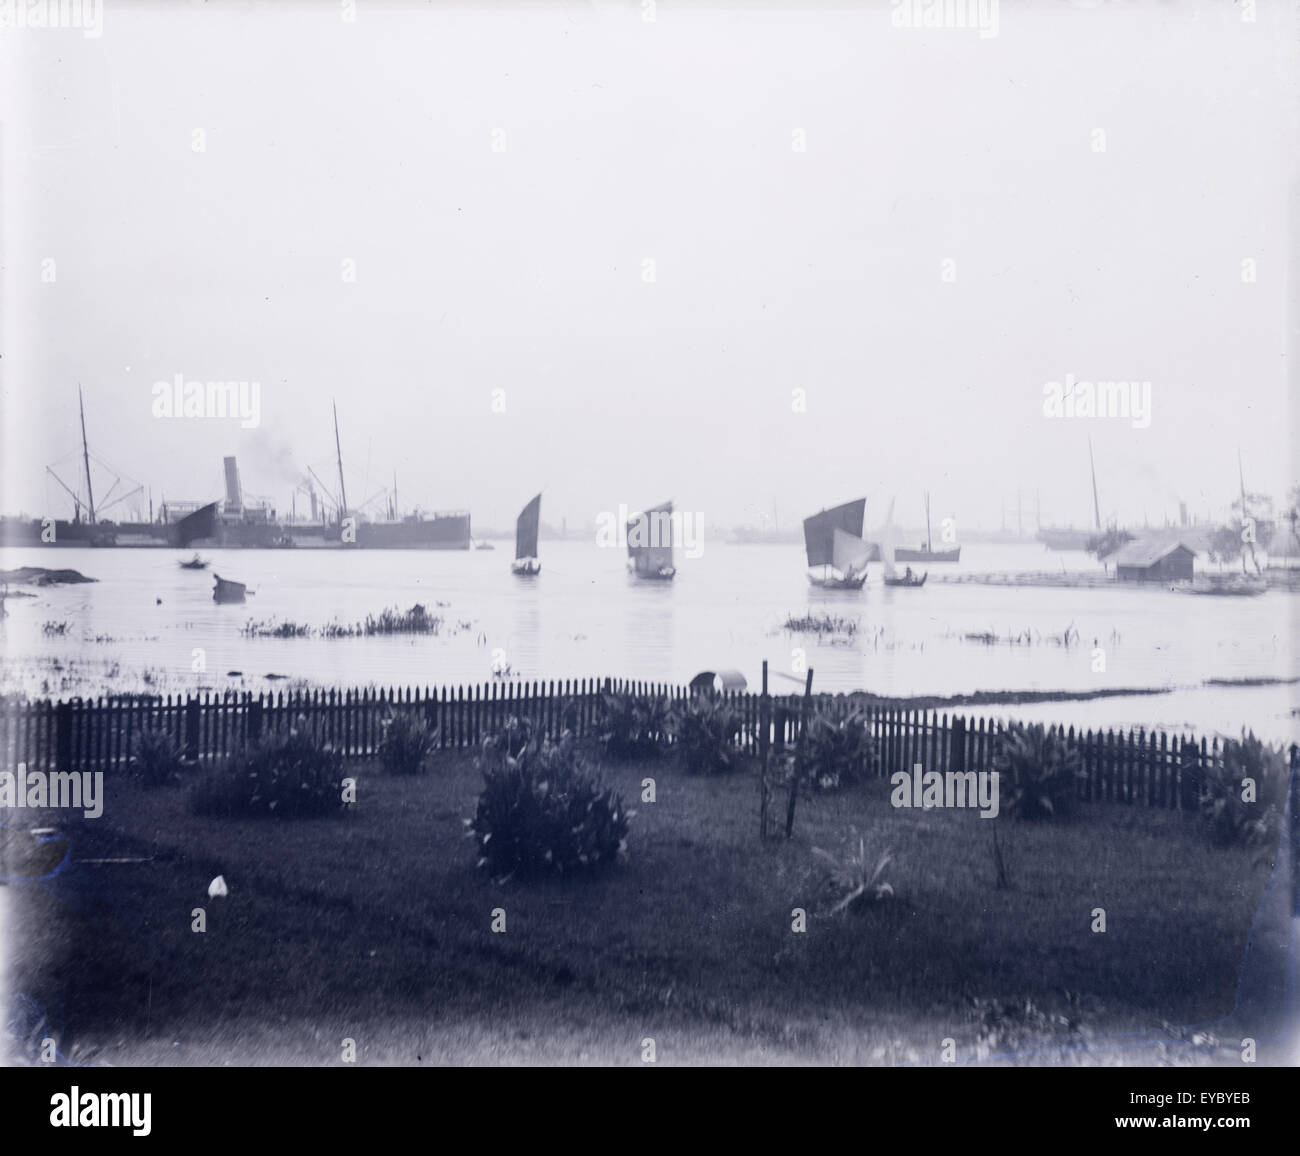 Antike 1900 Foto von Burma (Republik der Union von Myanmar) Flusshafen Stapel Dampfschiff und Fischerbooten. Stockfoto